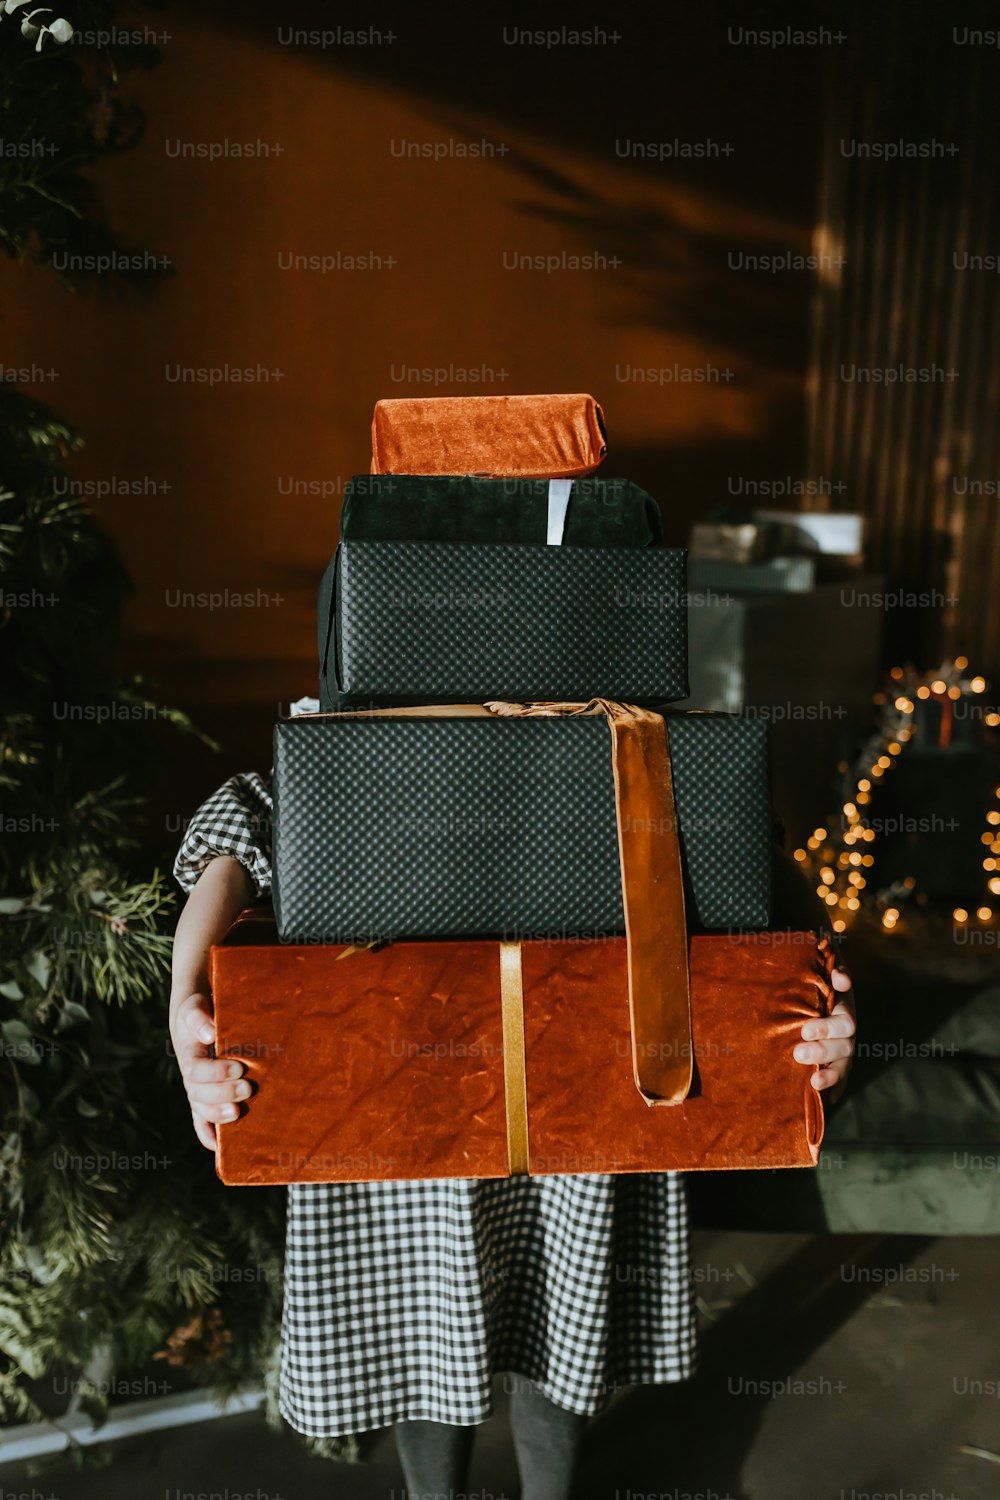 Eine Frau hält einen Gepäckstapel vor einem Weihnachtsbaum